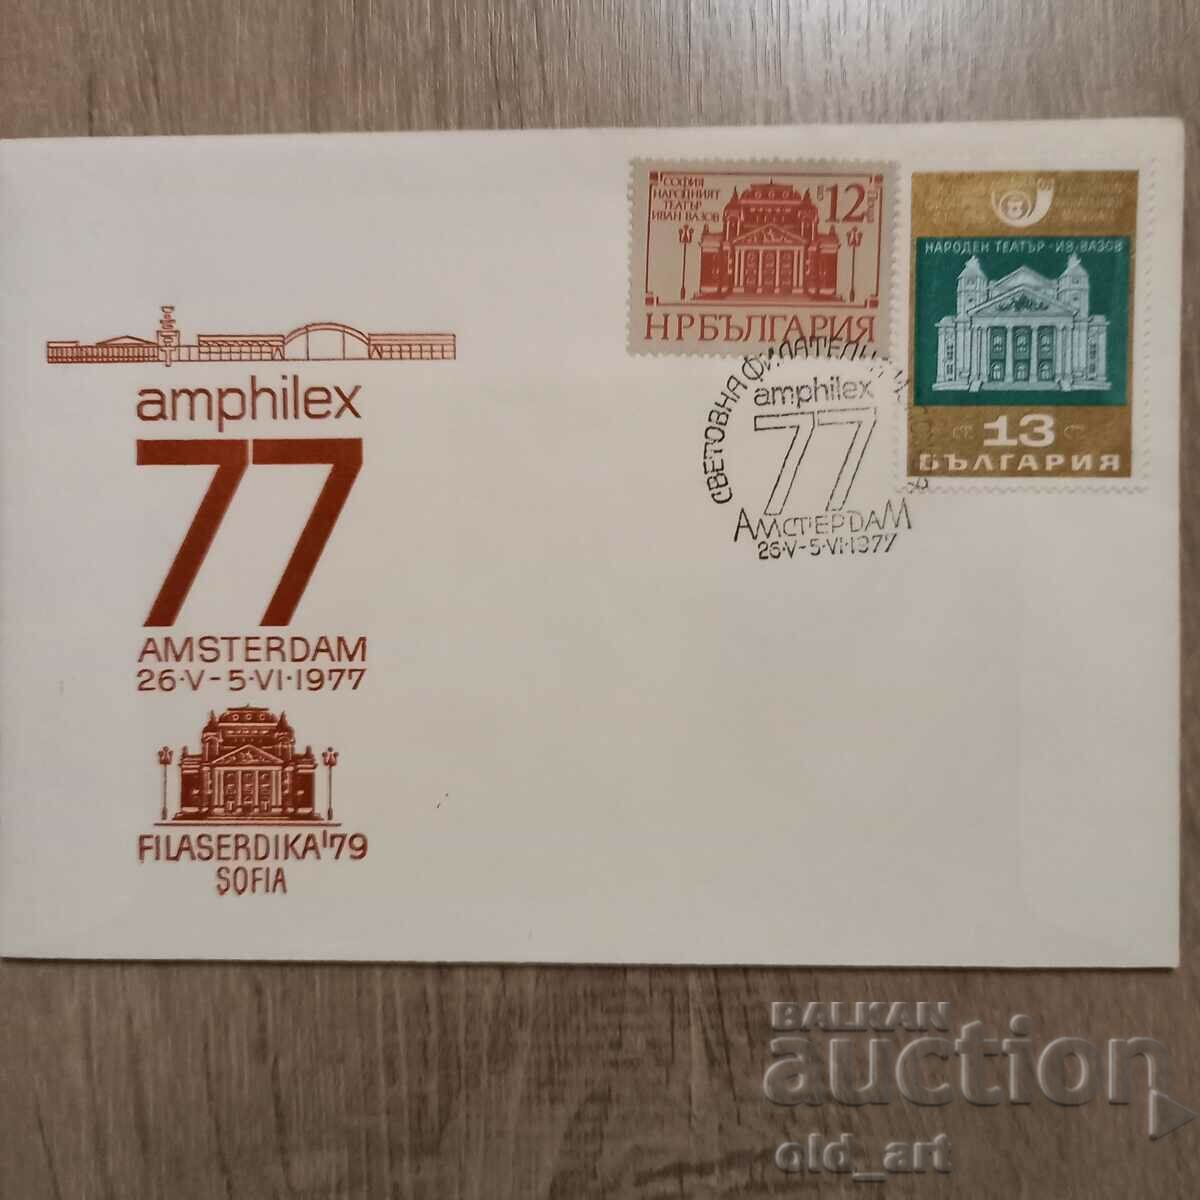 Mailing envelope - World Philatelic Exhibition Amsterdam